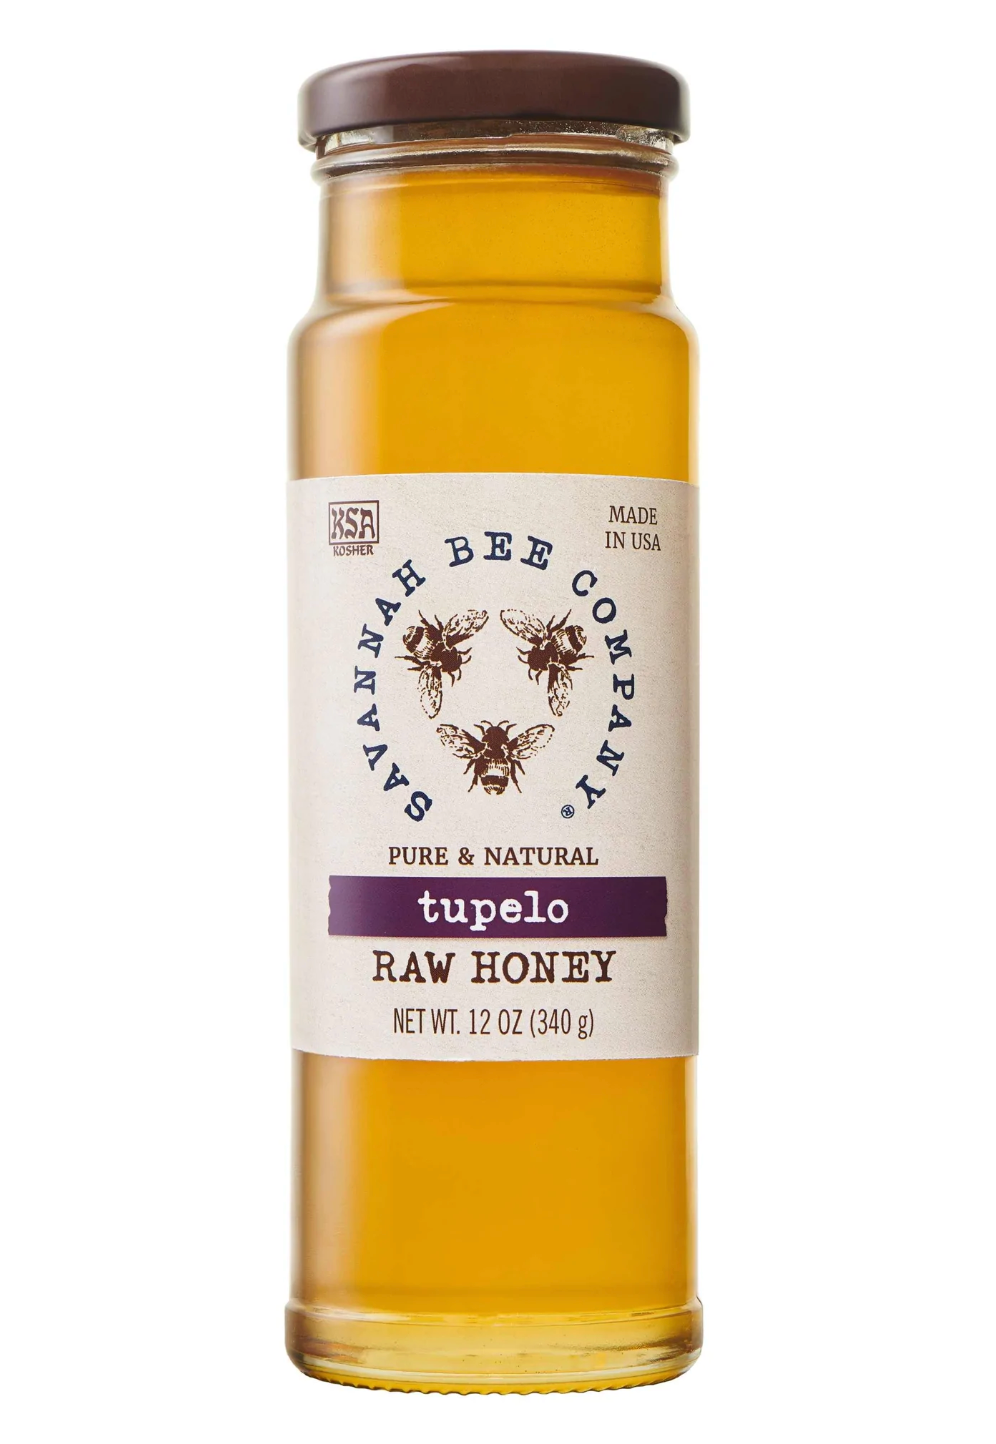 Tupelo Raw Honey by Savannah Bee Company